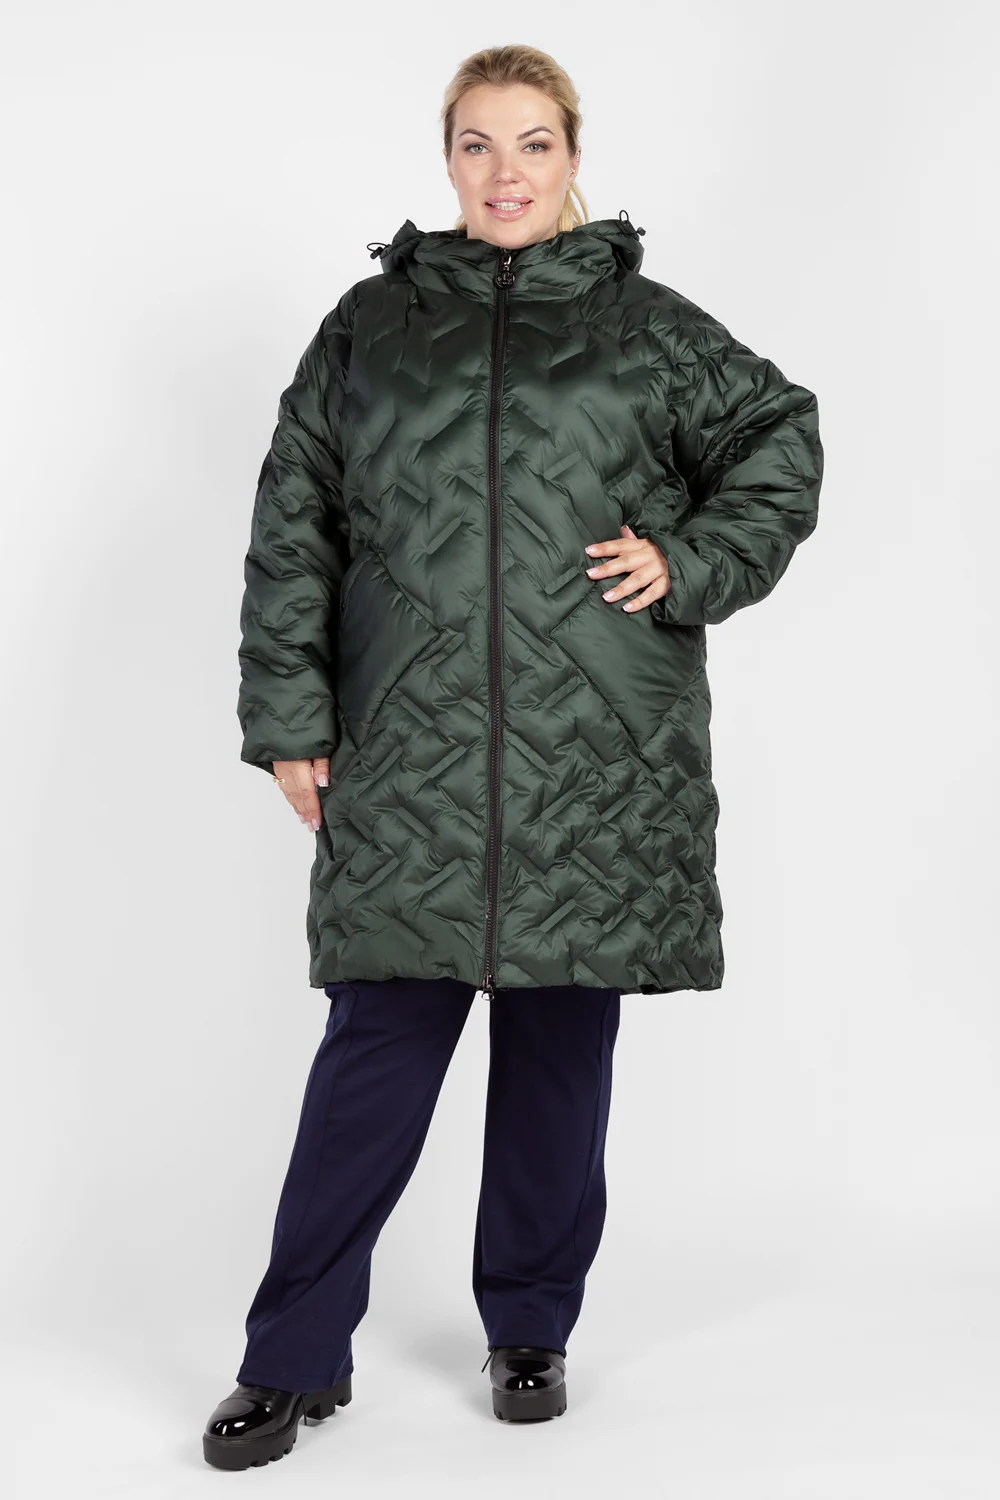 Пальто женское больших размеров полупальто зимнее стеганое демисезонное для